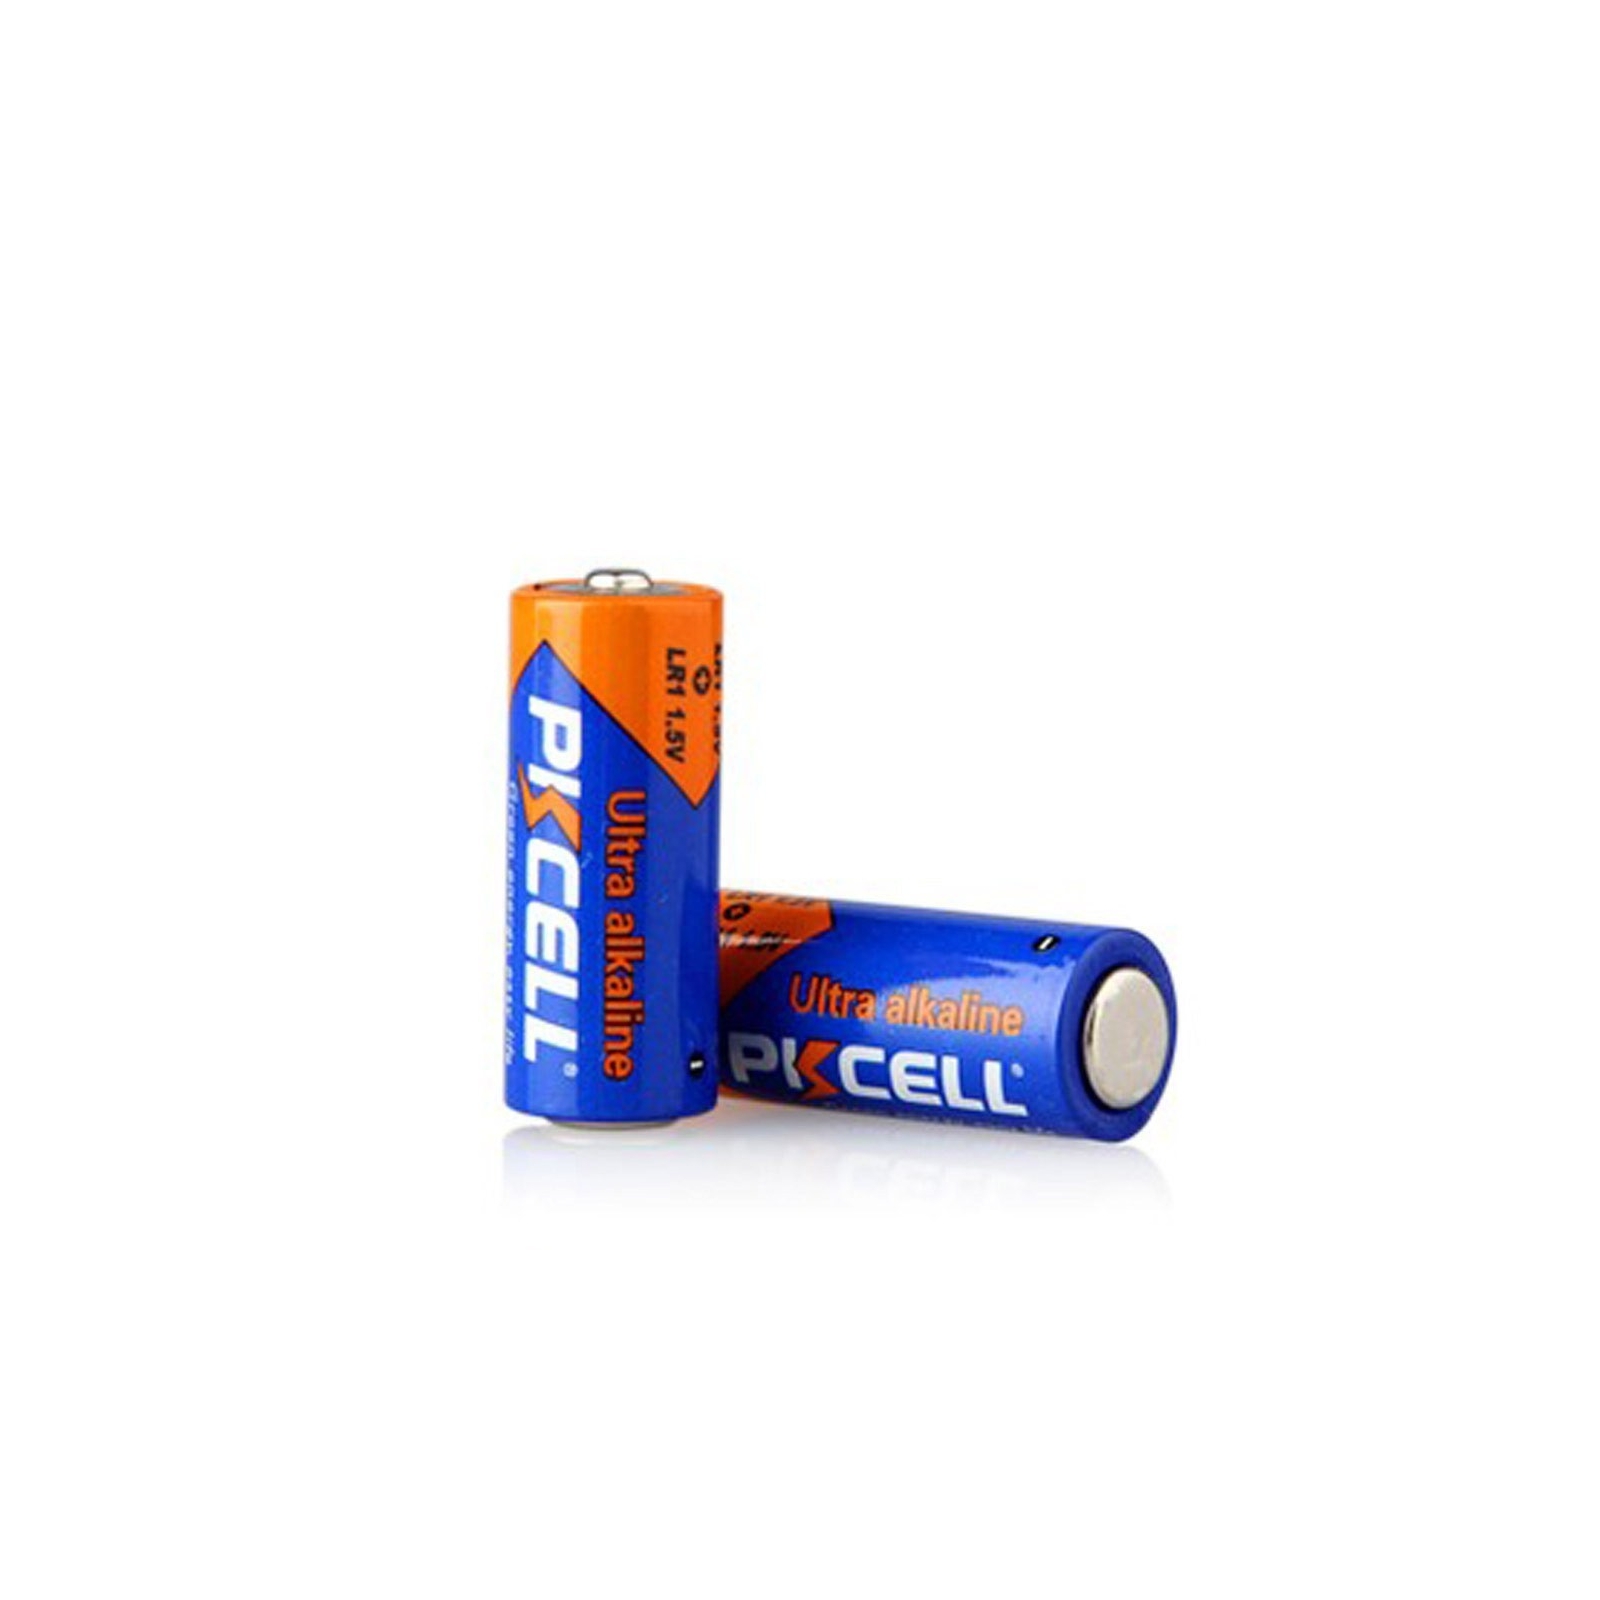 Piles LR1 1.5V Ultra Alcaline PKCell